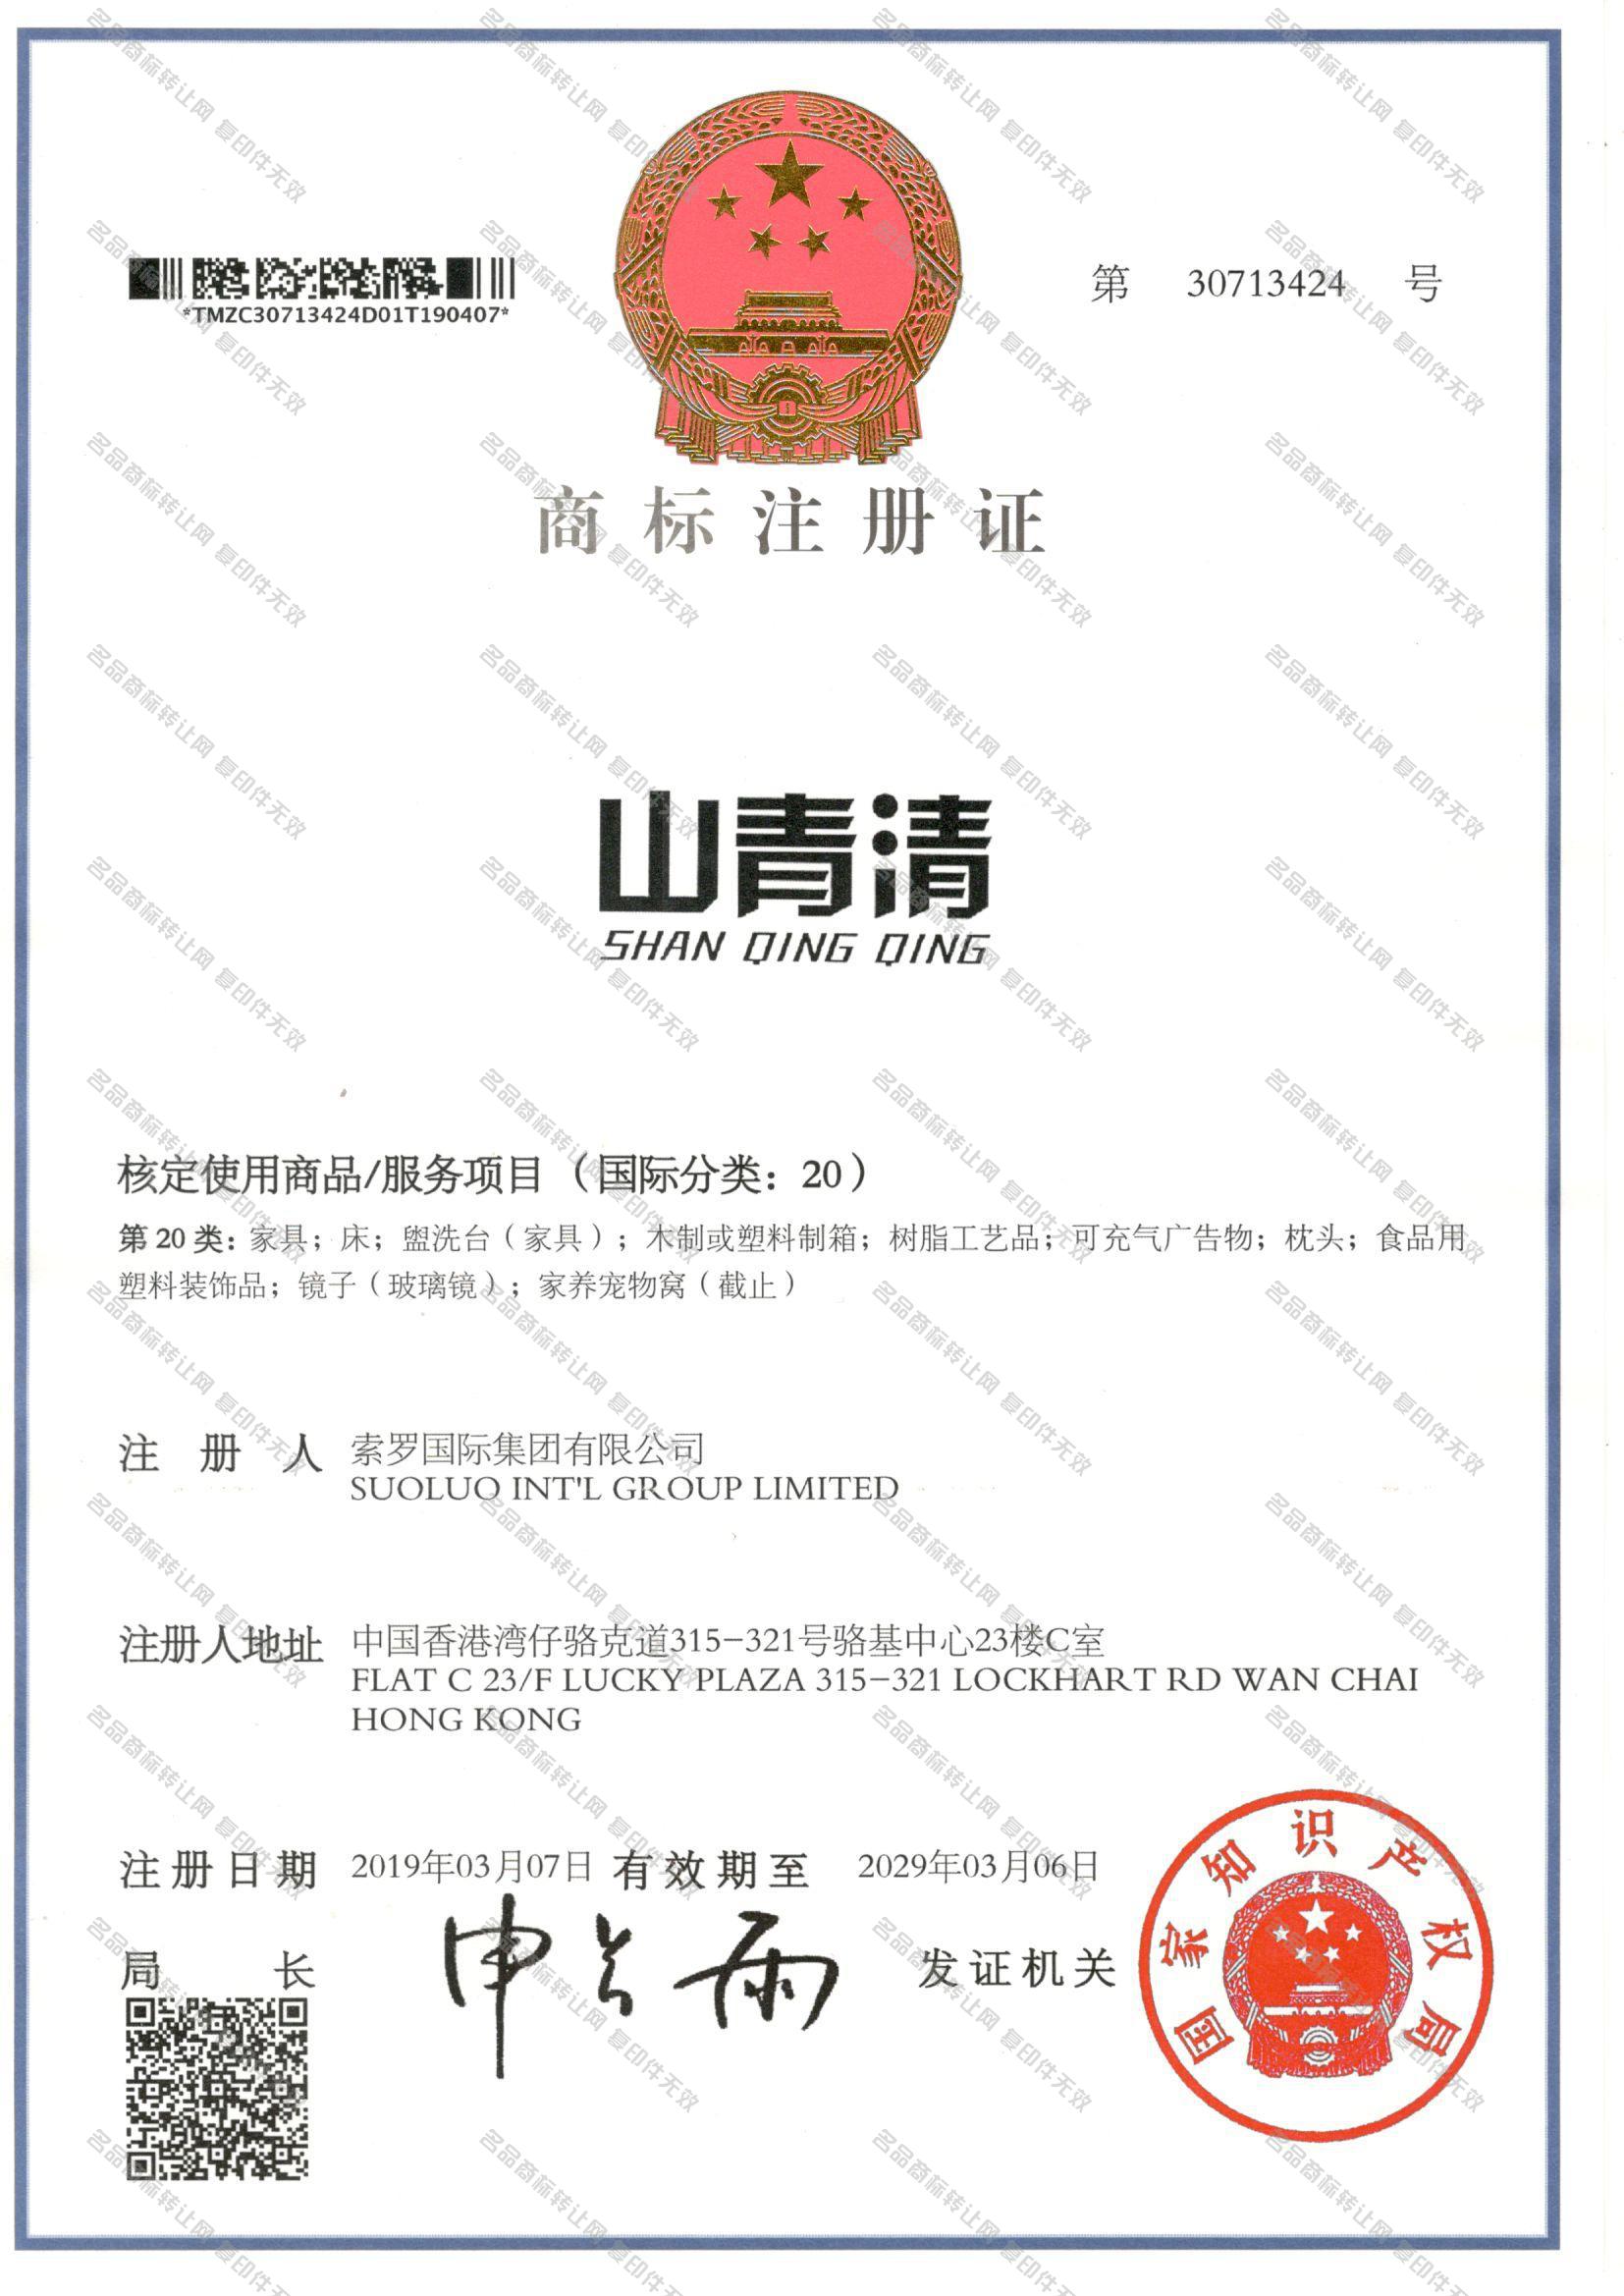 山青清 SHANQINGQING注册证